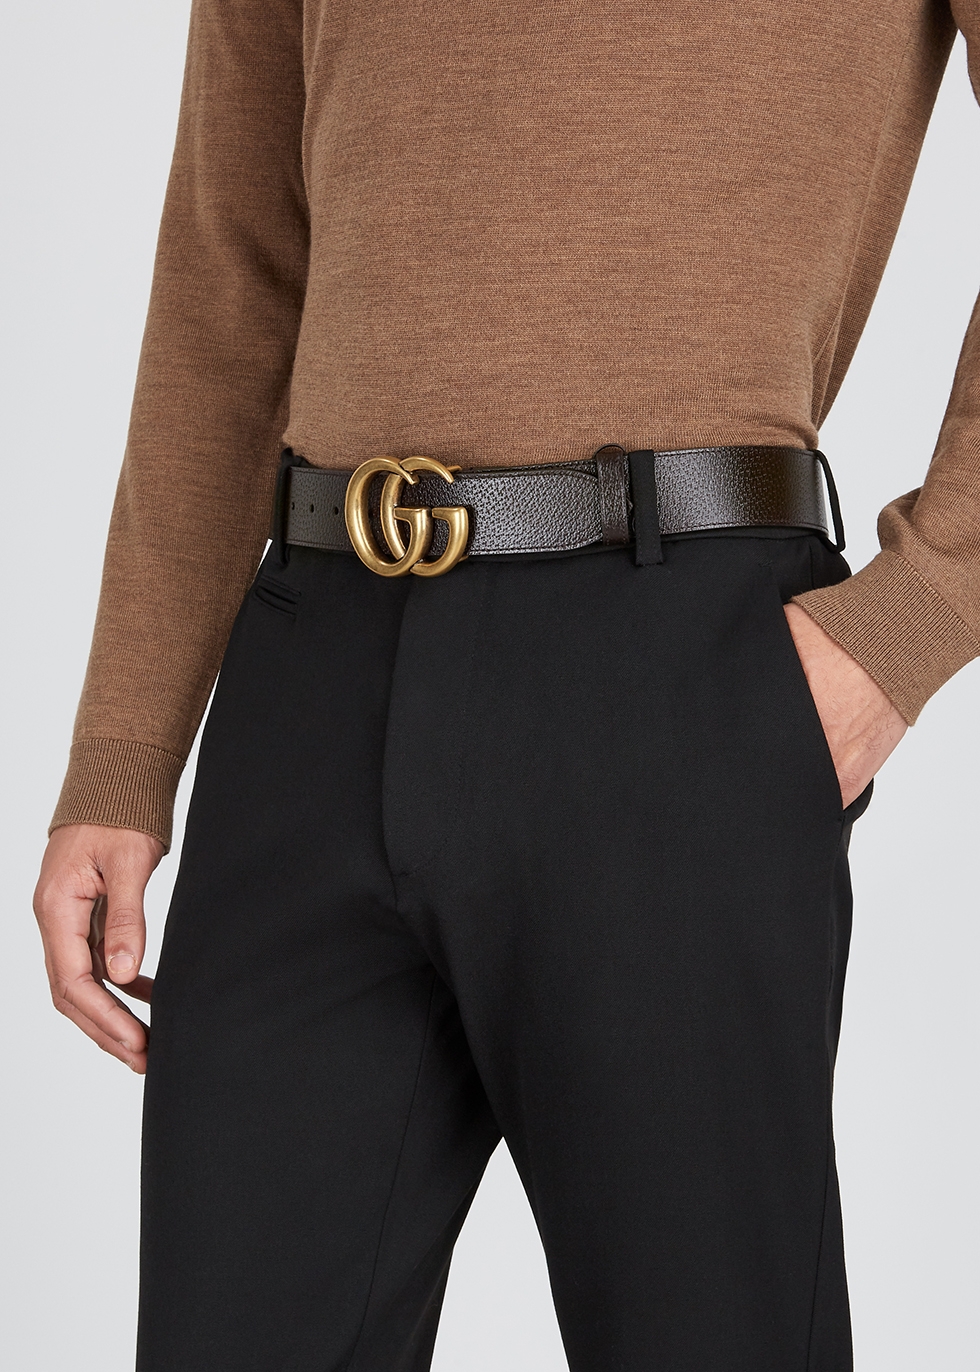 dark brown gucci belt